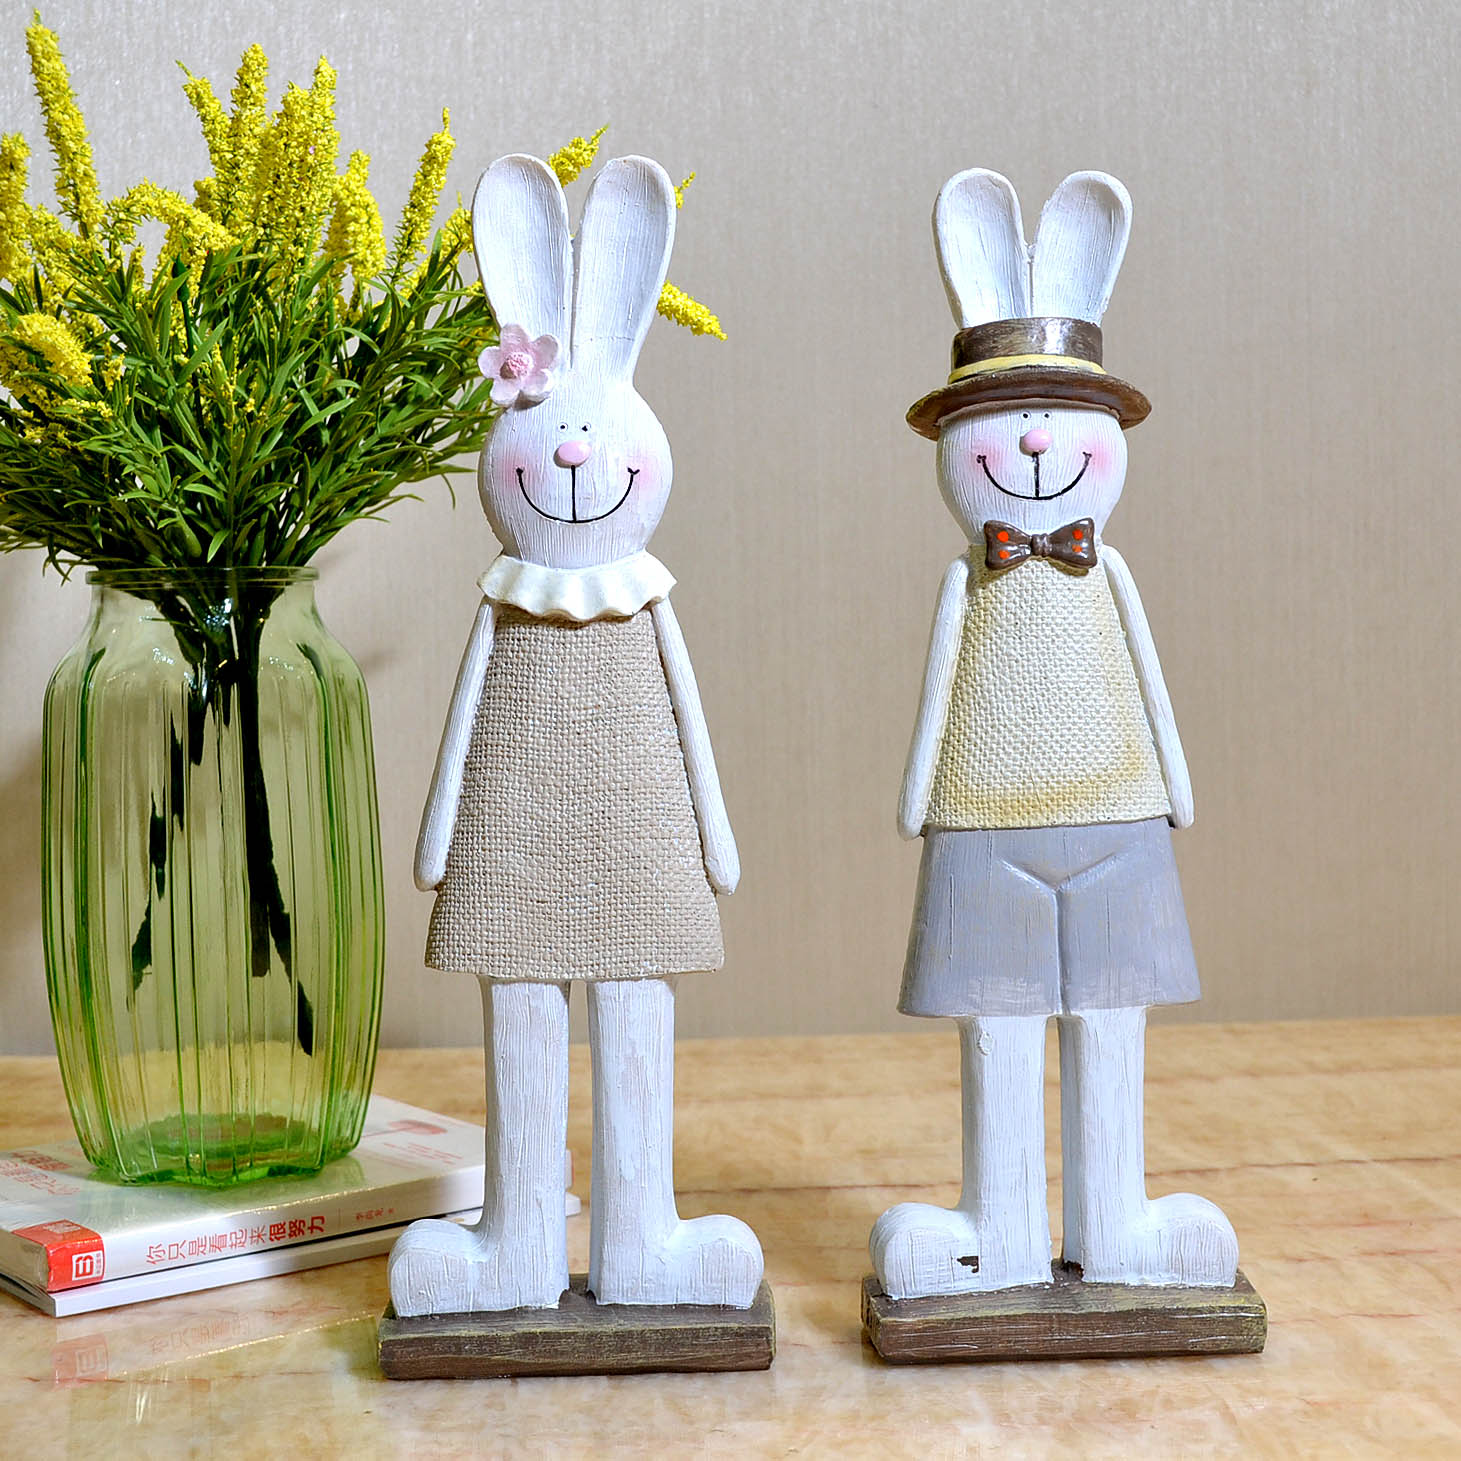 創意禮物桌面北歐擺設客廳辦公桌兔子裝飾品新年禮物家居飾品擺件